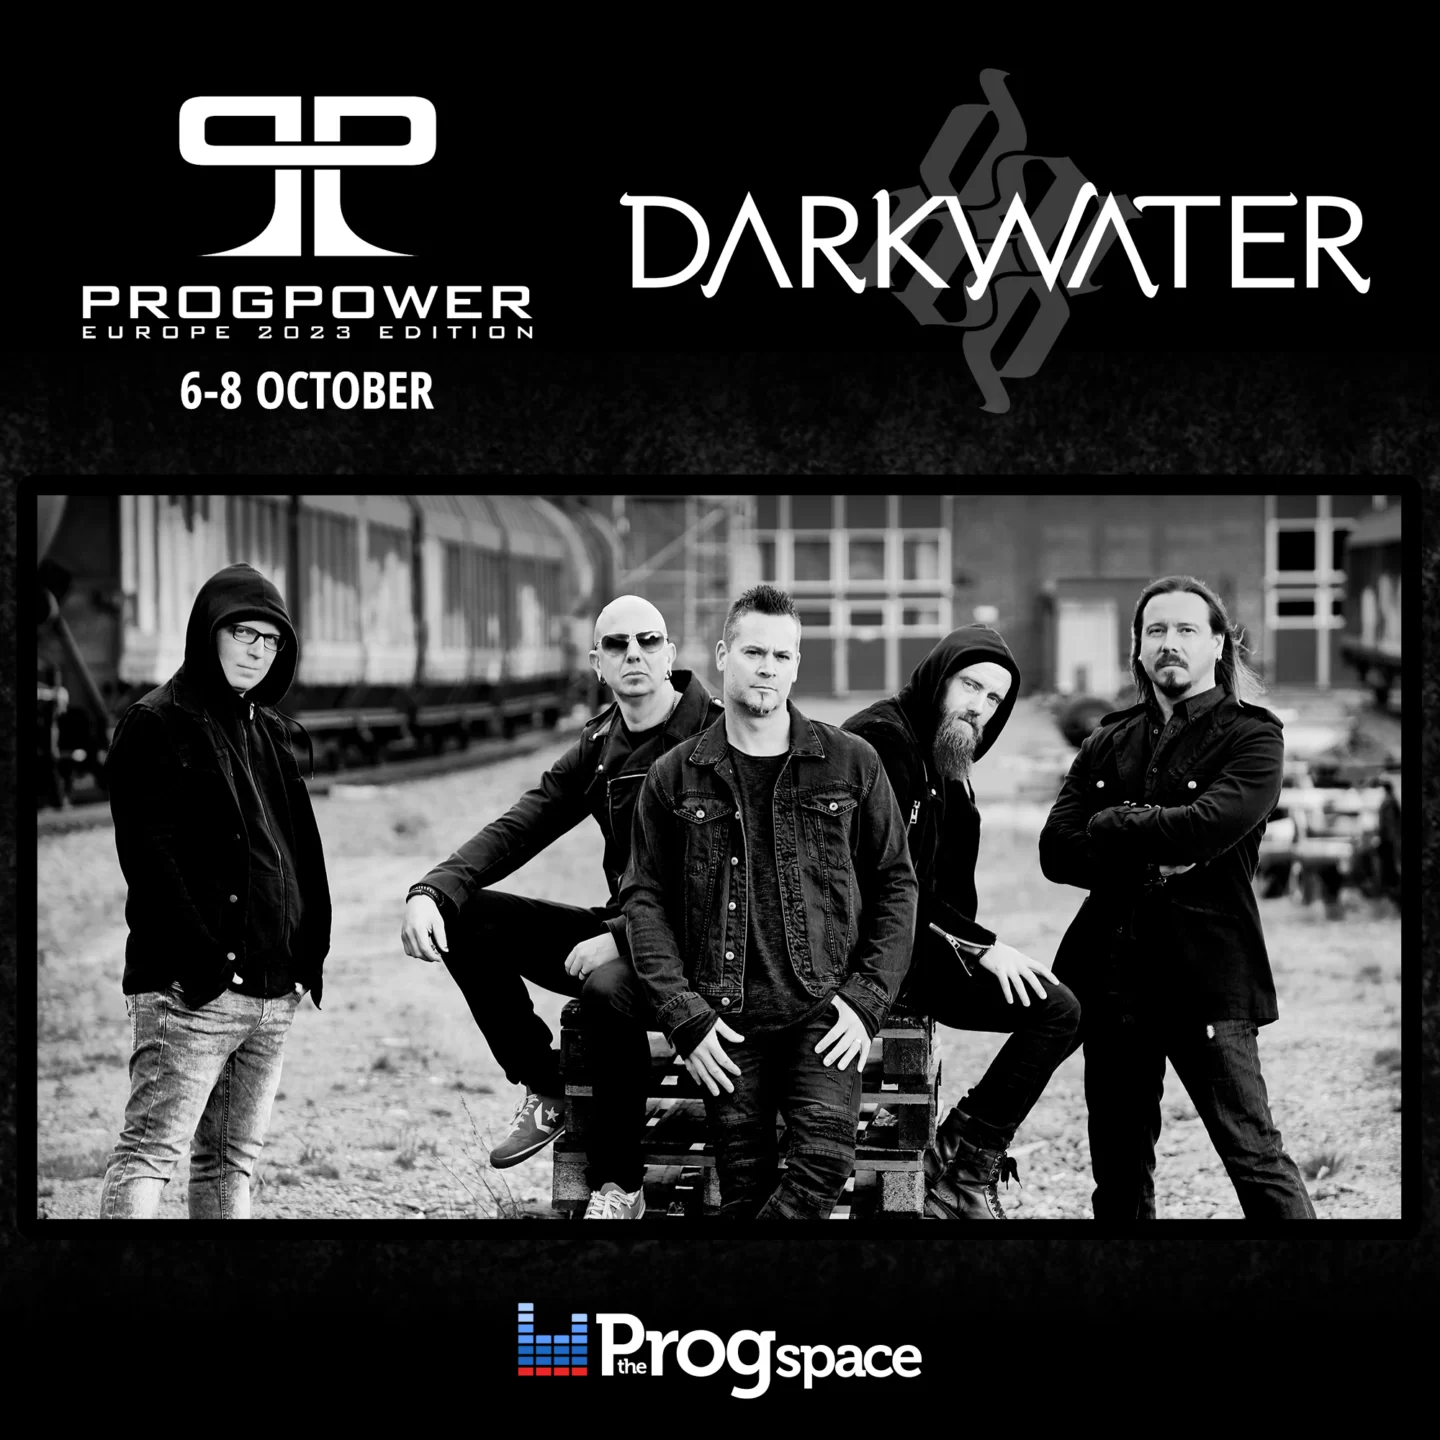 Band #2 for ProgPower Europe 2023: Darkwater